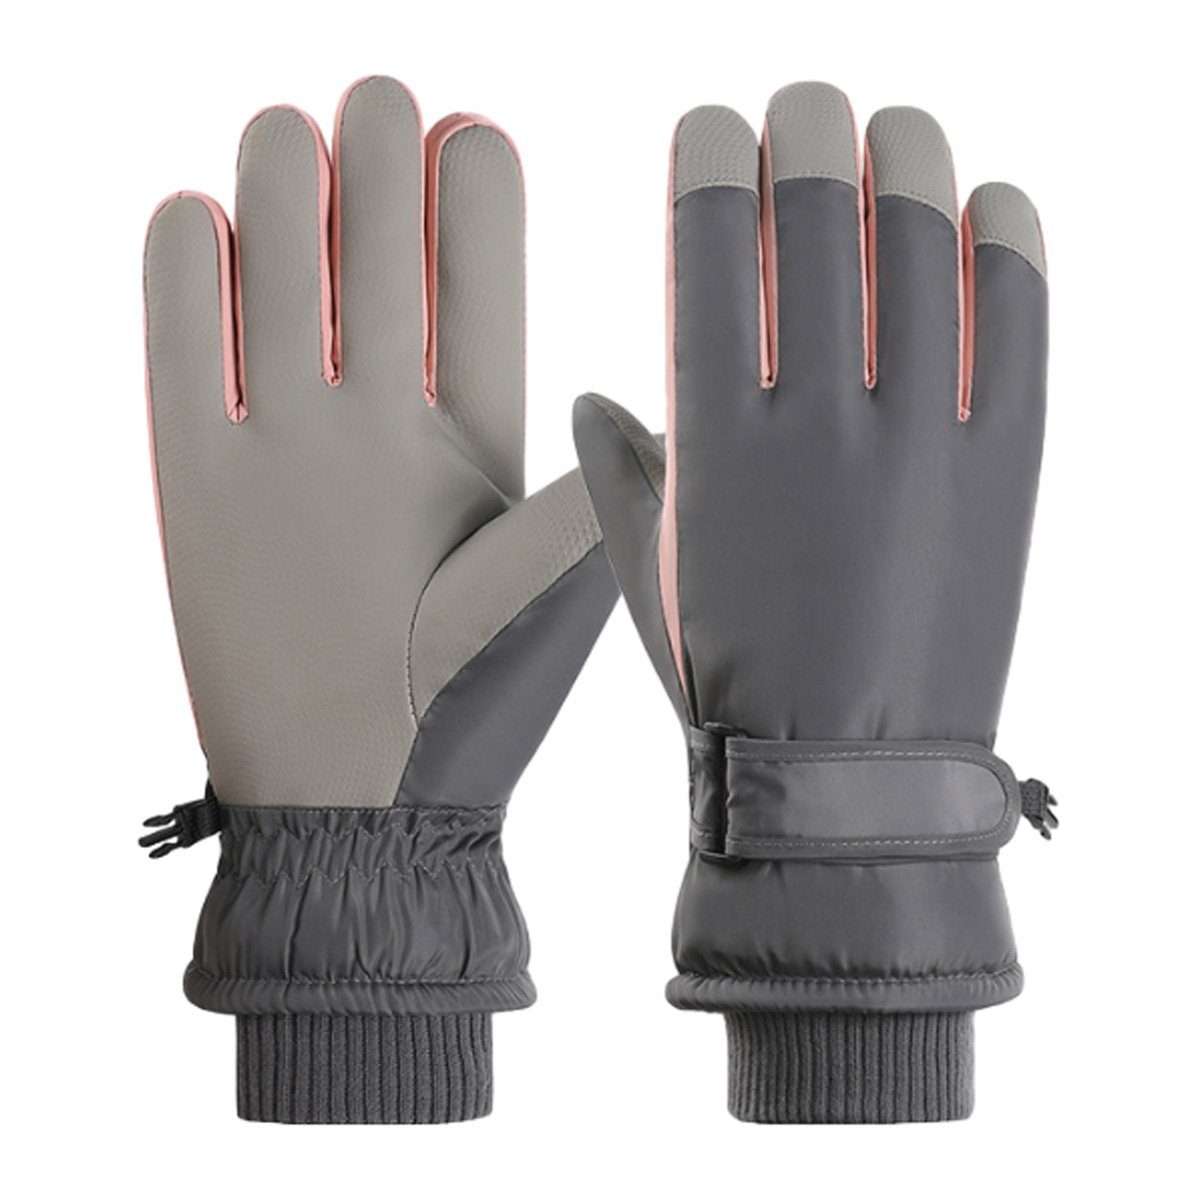 ZmdecQna Skihandschuhe Winterhandschuhe Winter Gloves Touchscreen Fahrradhandschuhe grau